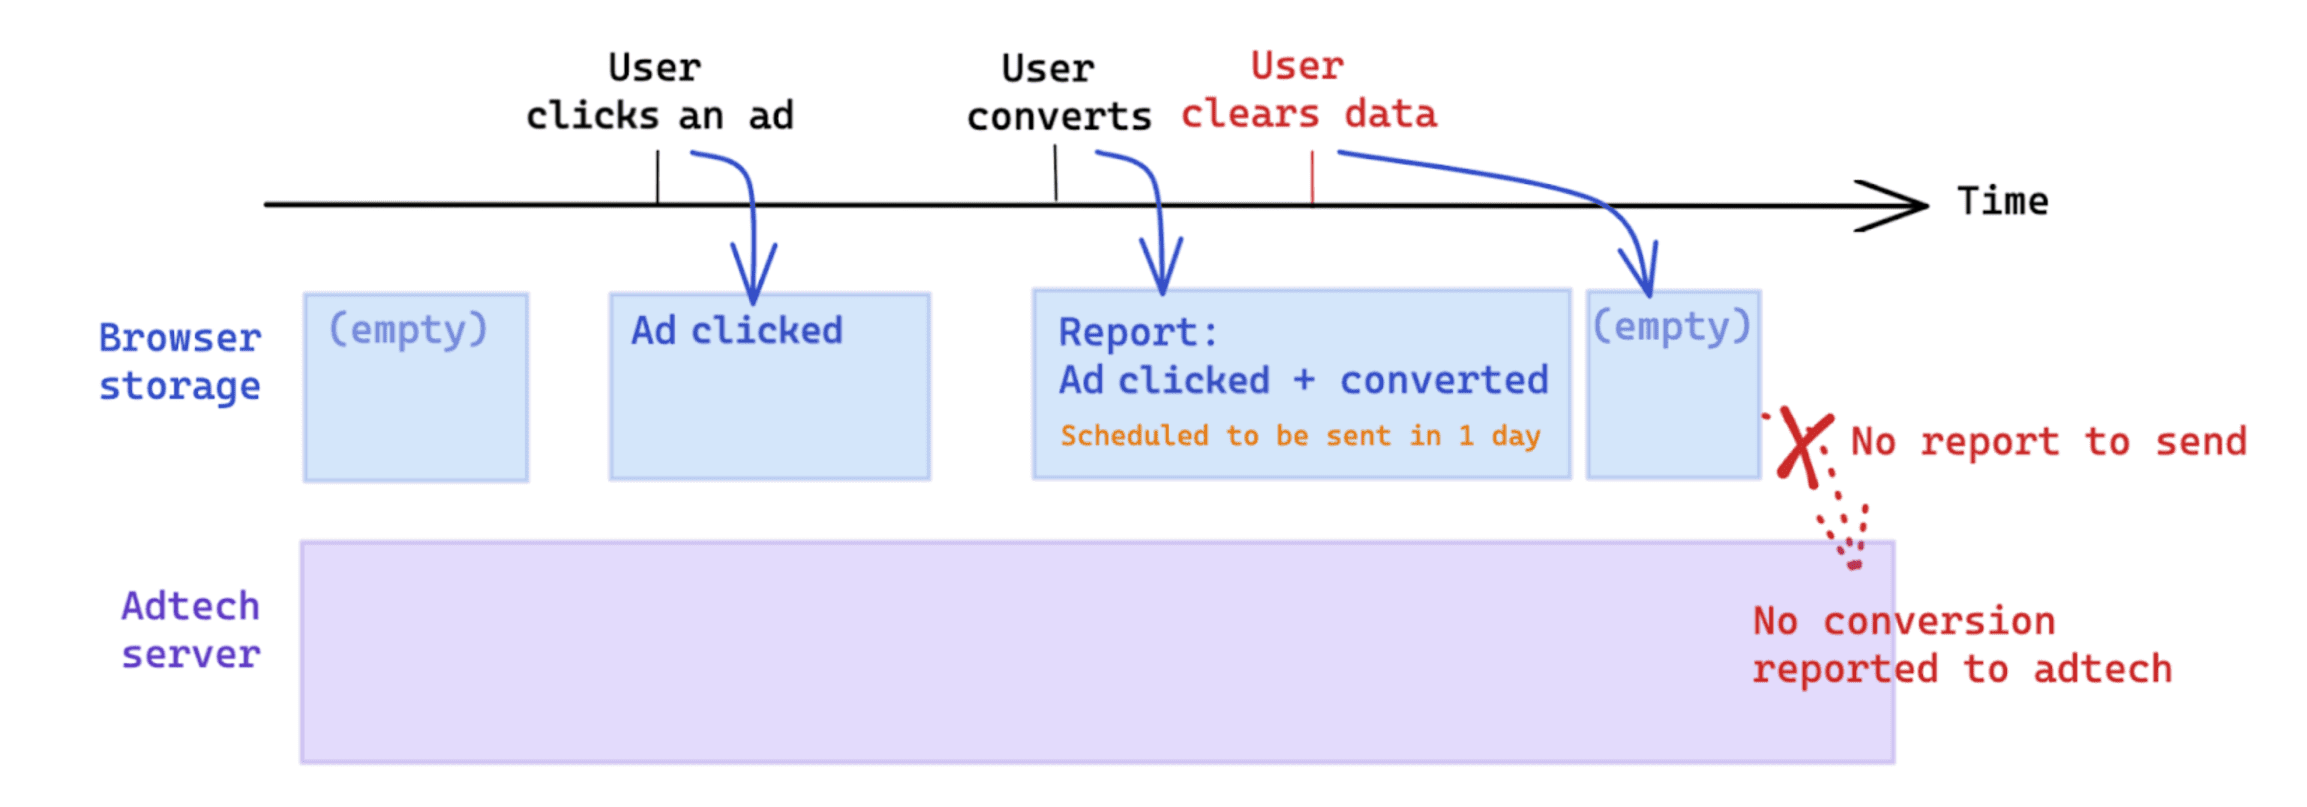 Los datos que inicia el usuario después de que una conversión afecta la medición según la API de Attribution Reporting.